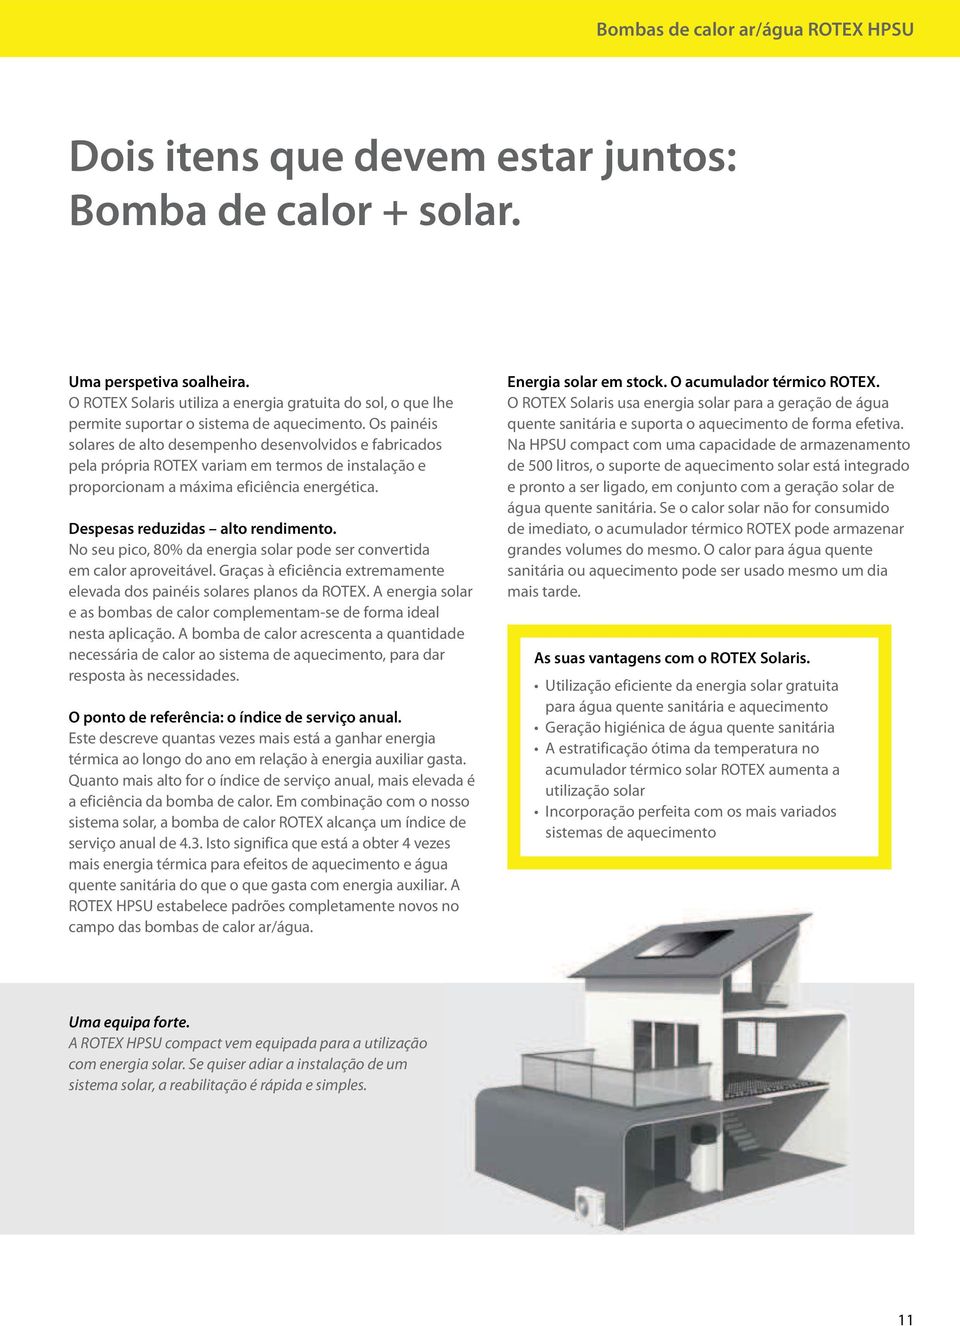 Os painéis solares de alto desempenho desenvolvidos e fabricados pela própria ROTEX variam em termos de instalação e proporcionam a máxima eficiência energética. Despesas reduzidas alto rendimento.